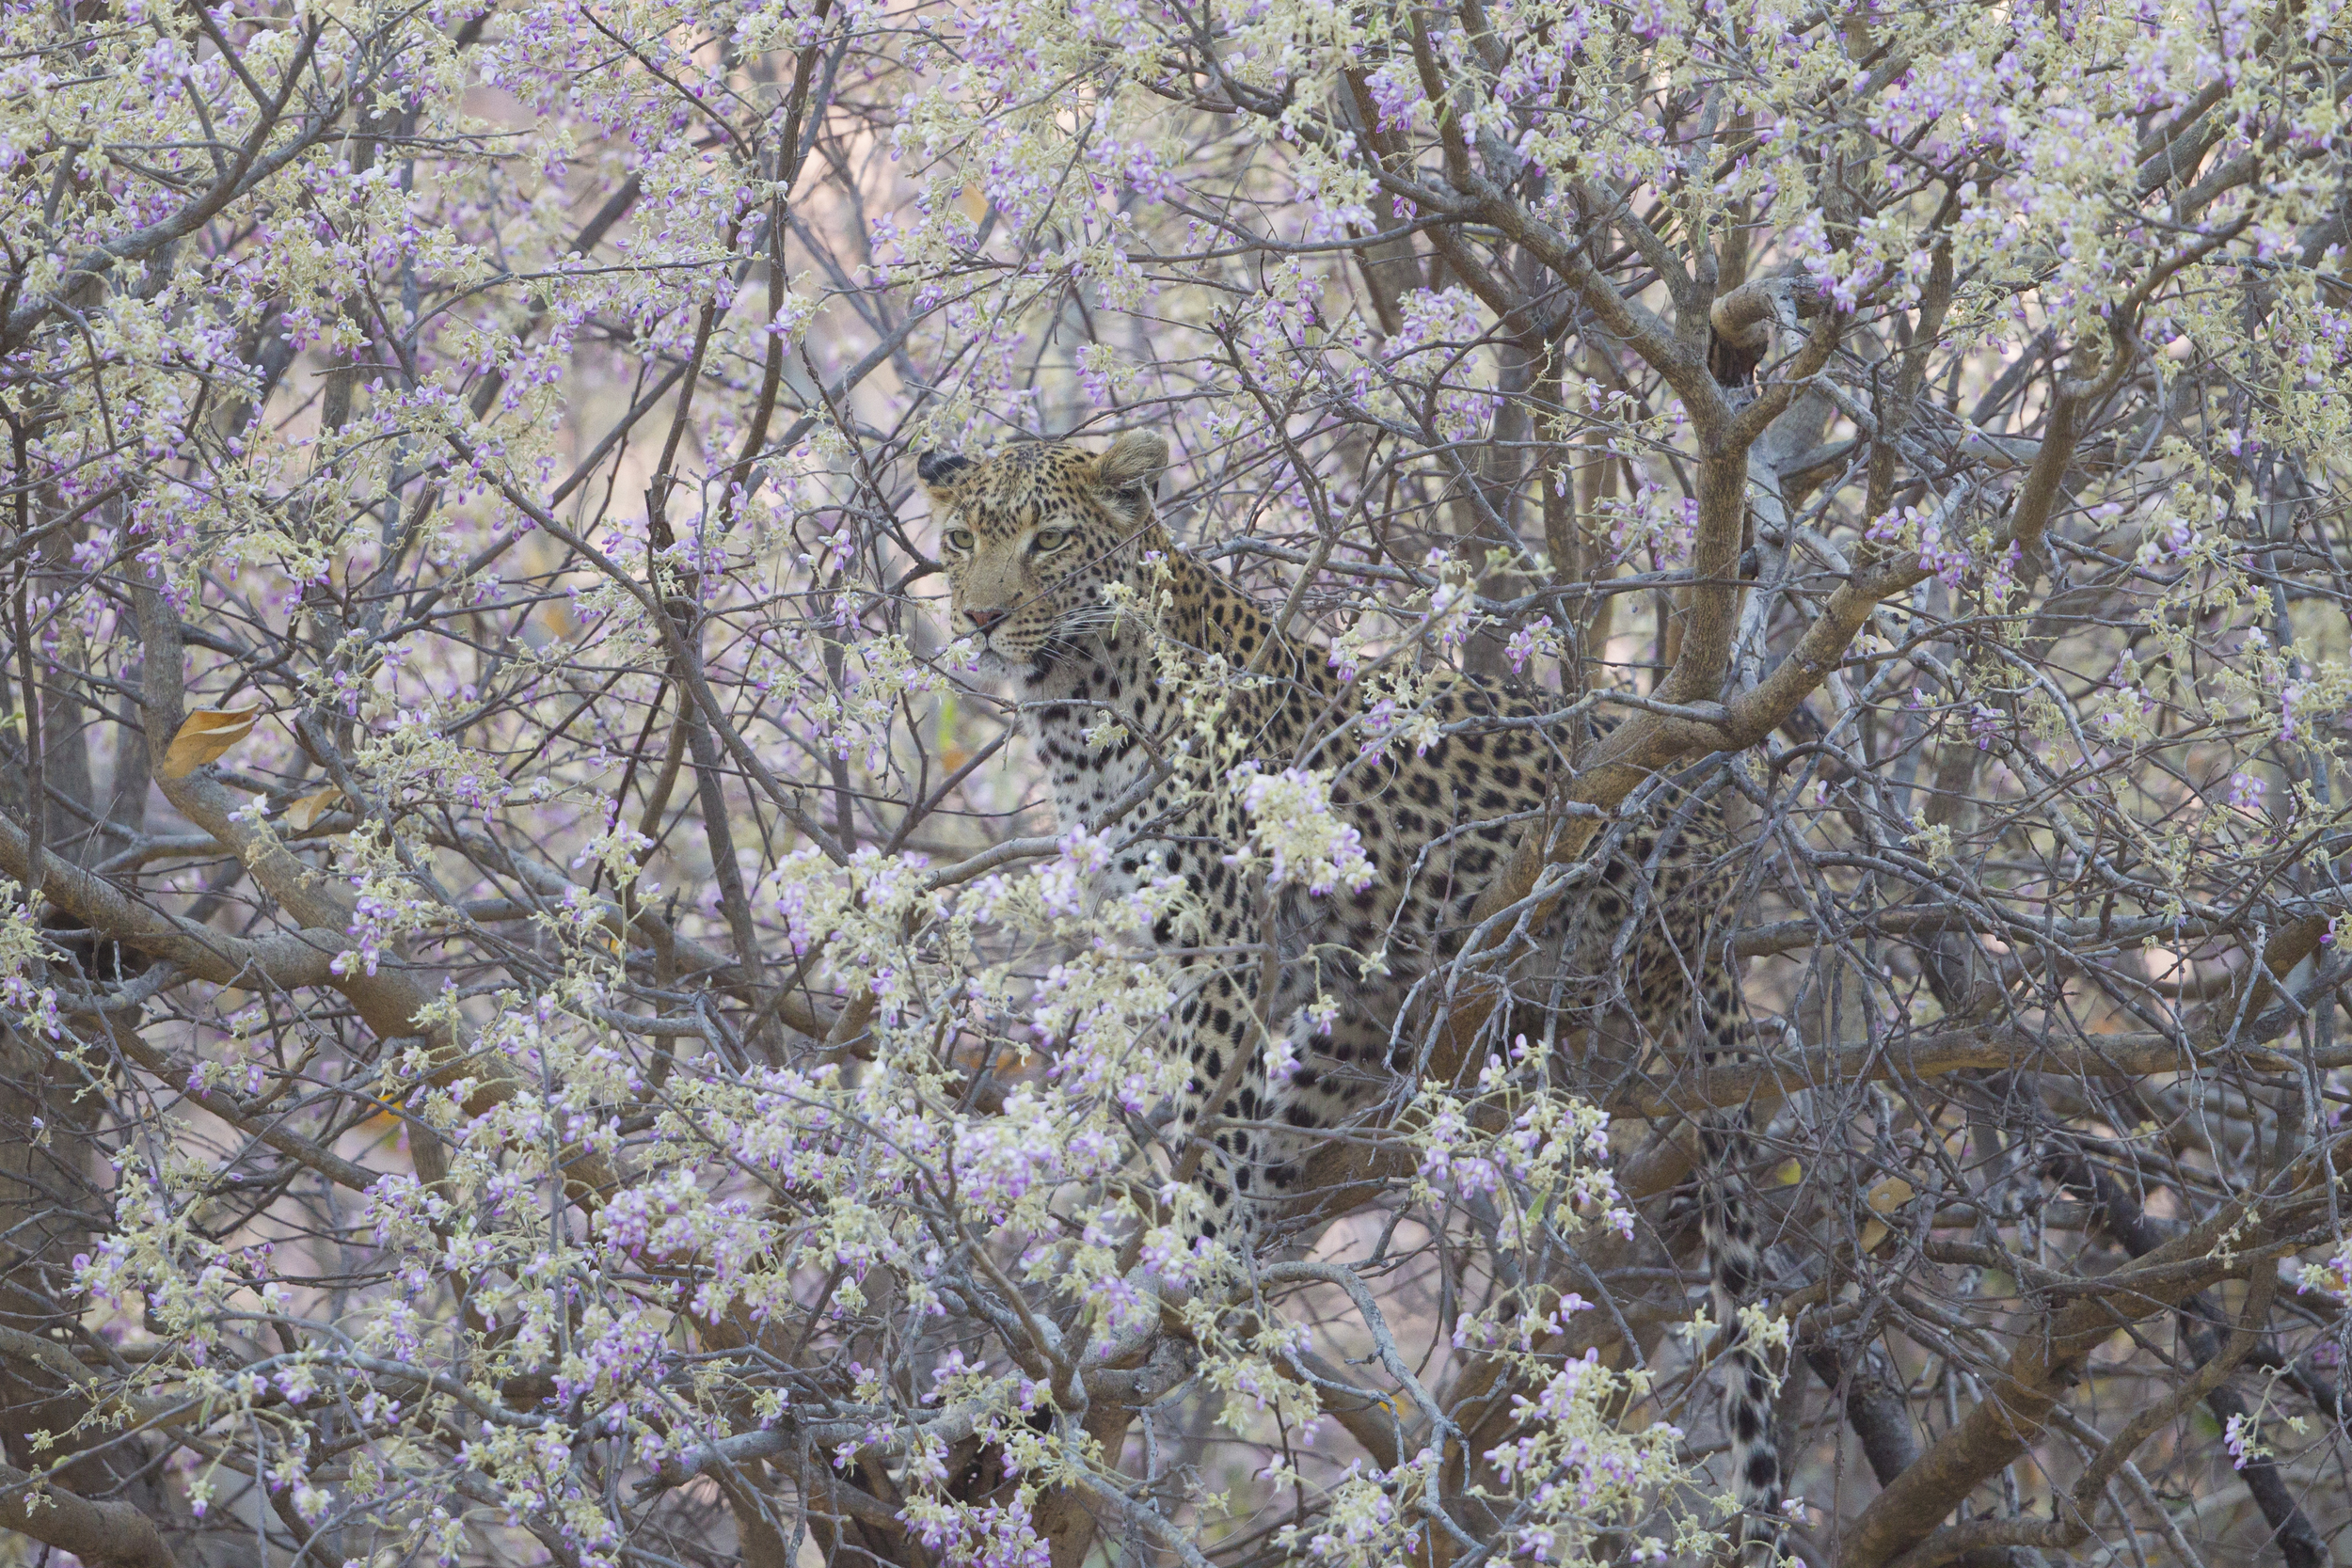  Leopard   Panthera pardus    Botswana    Khwai NP    2015  